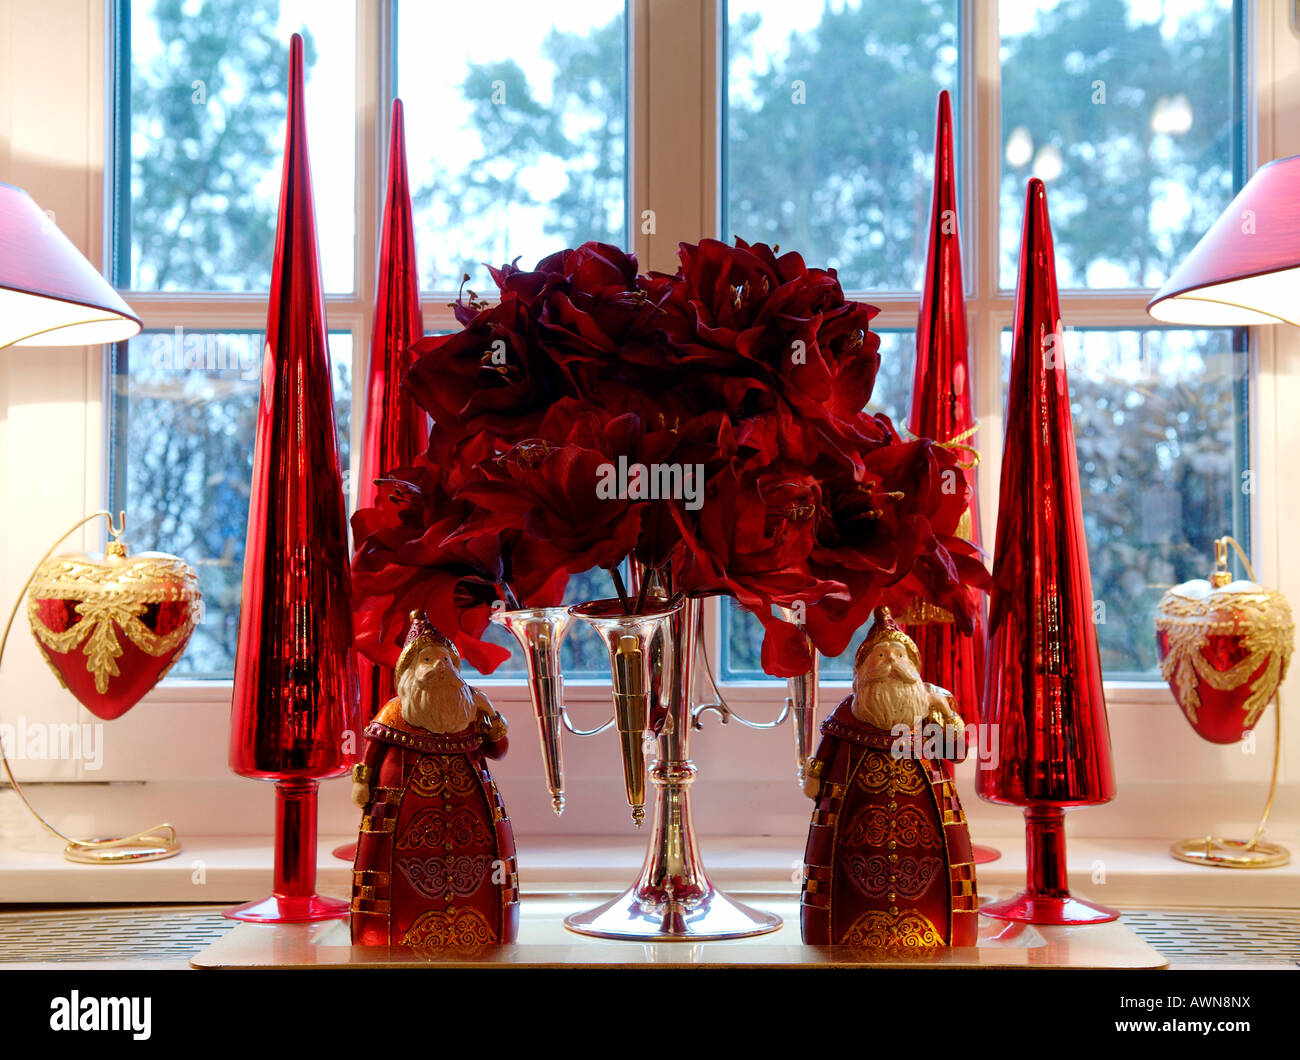 Les décorations de Noël devant une fenêtre, deux arbres de Noël stylisé Santas, rouge fleurs artificielles dans un quatre-armé candela Banque D'Images